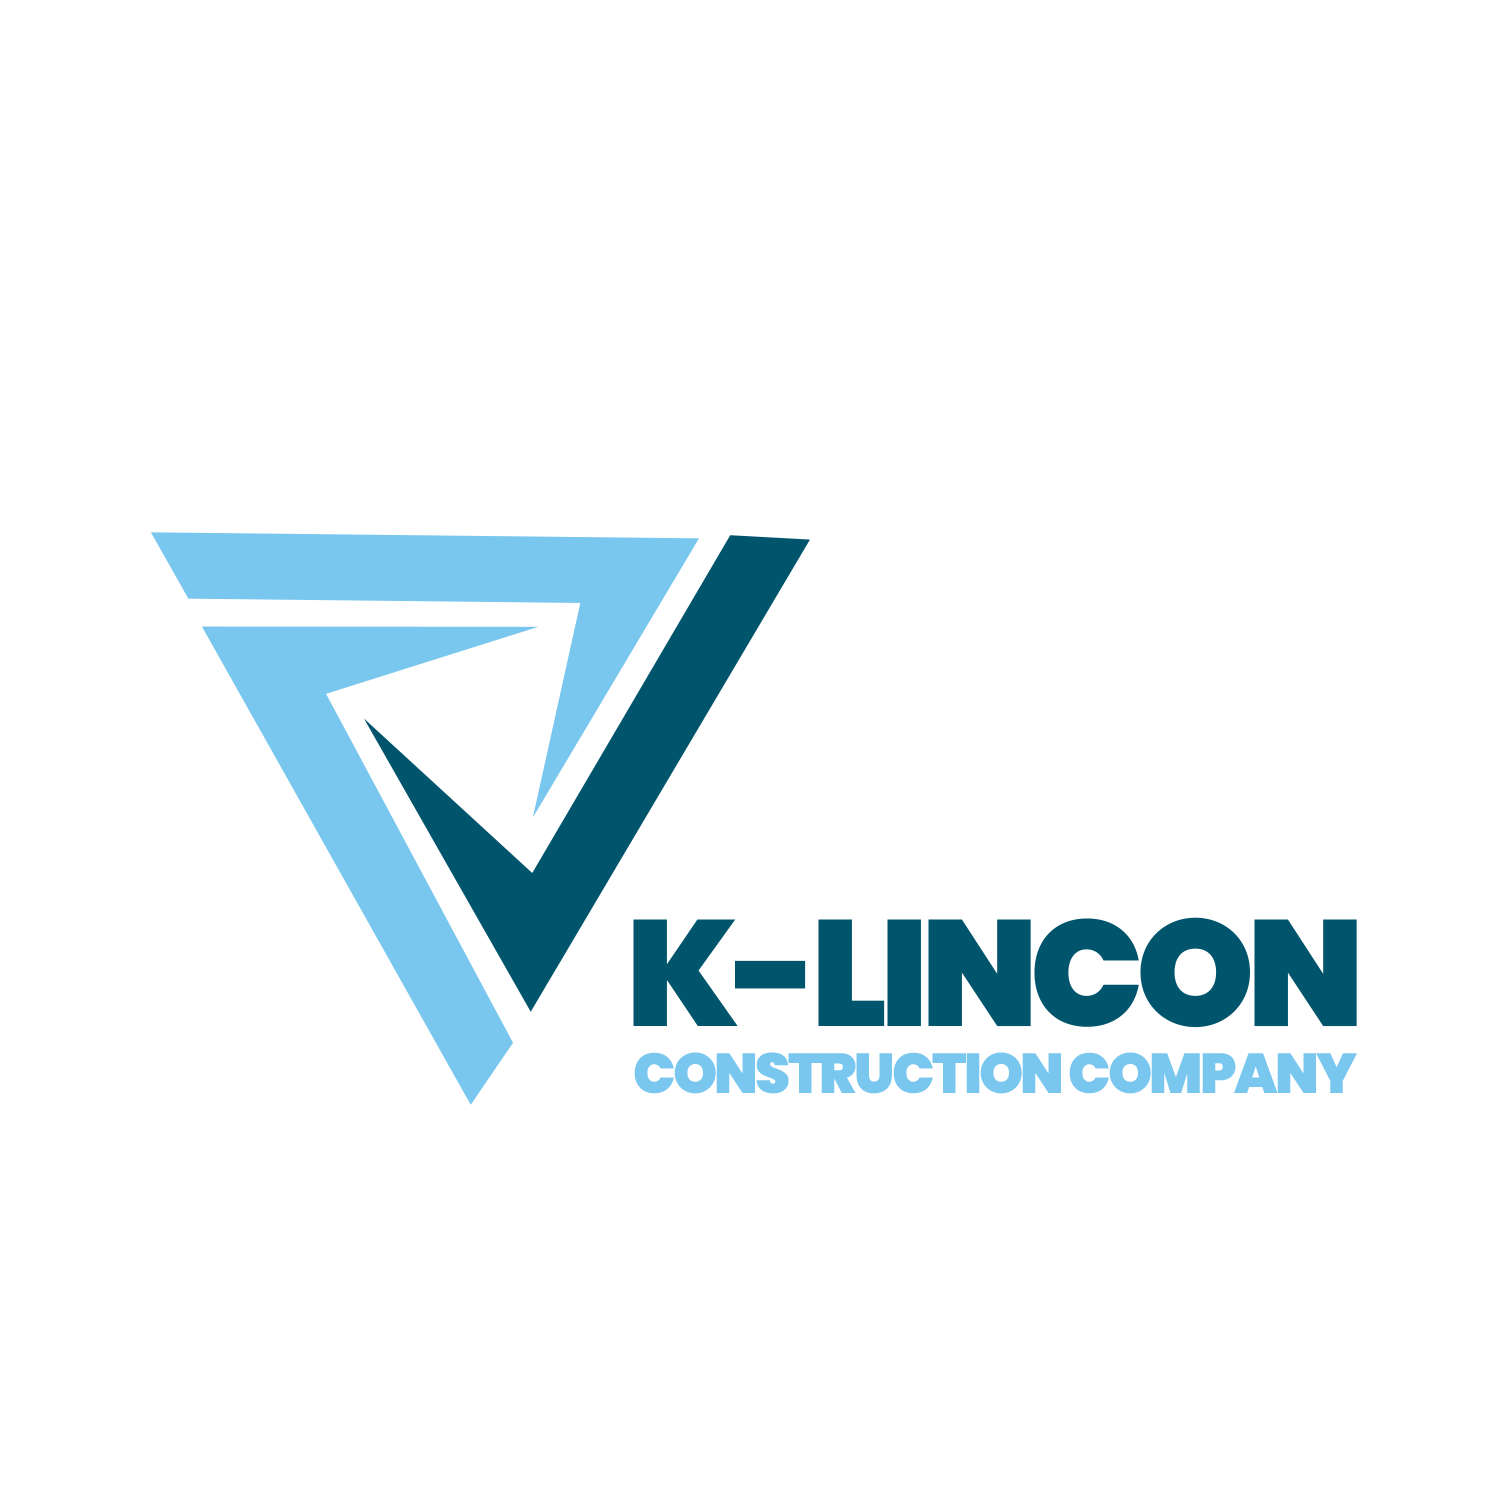 K-Lincon